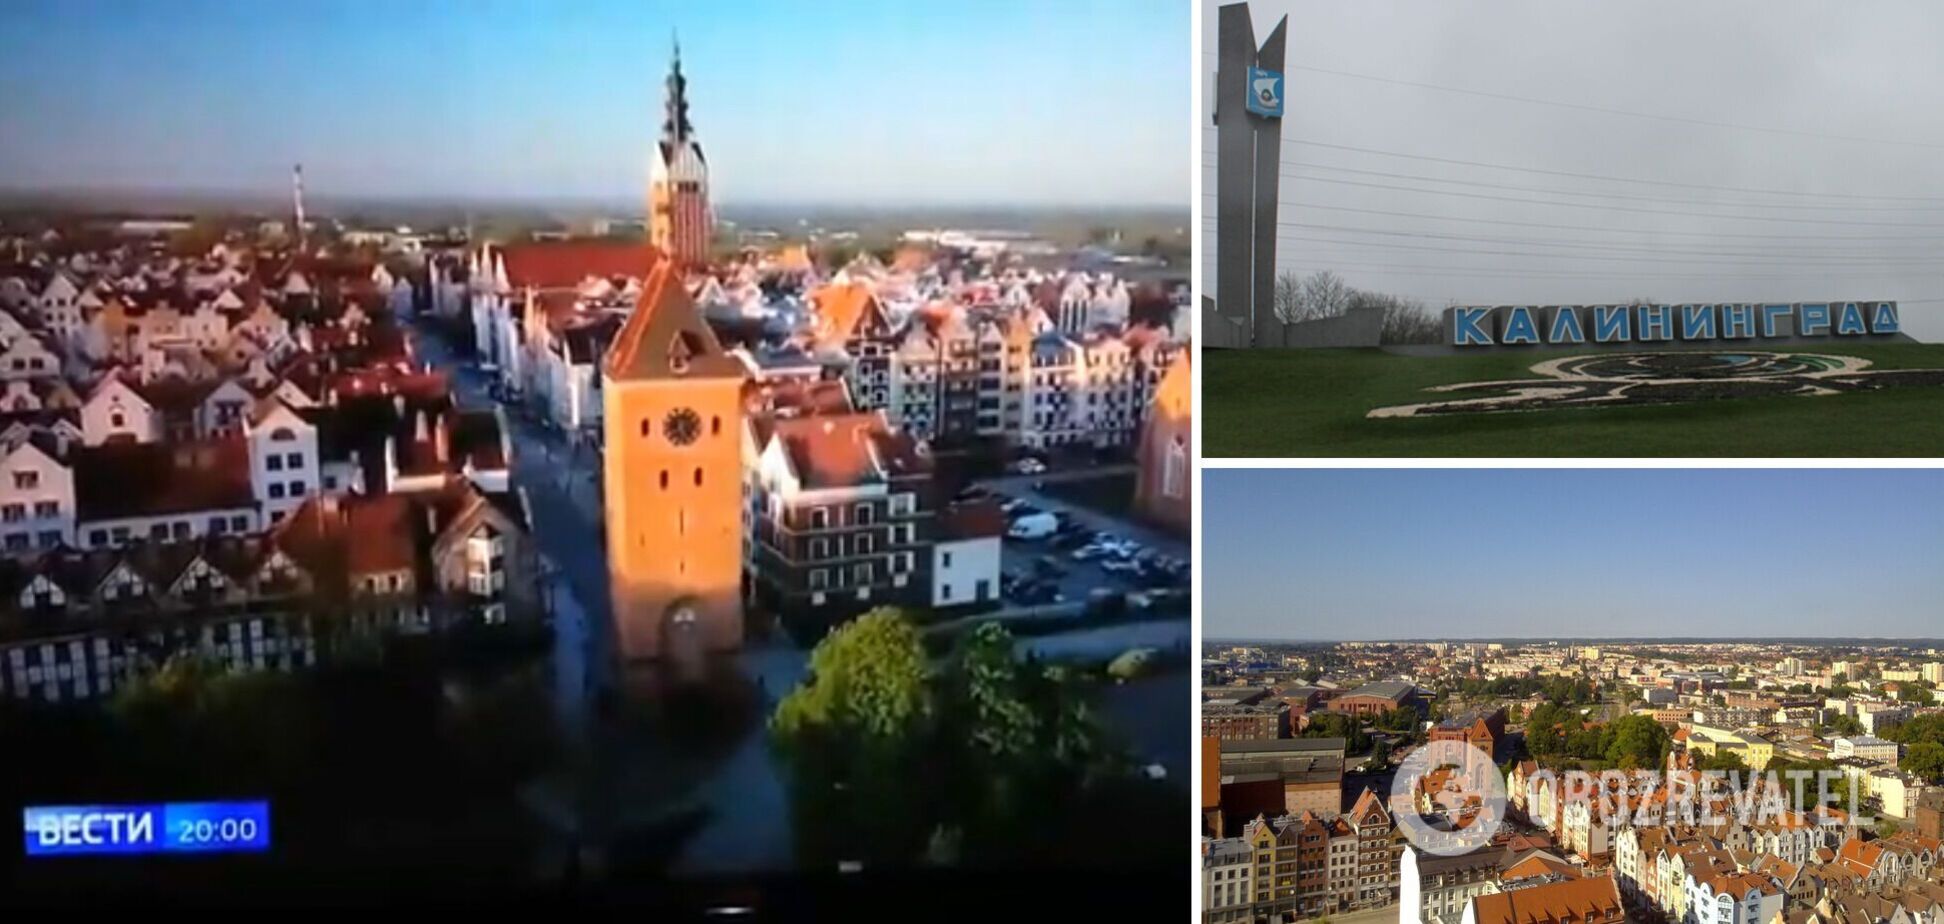 Пропагандисти Путіна похвалилися відео 'квітучого Калінінграду', але оконфузились: на кадрах була Польща. Відео